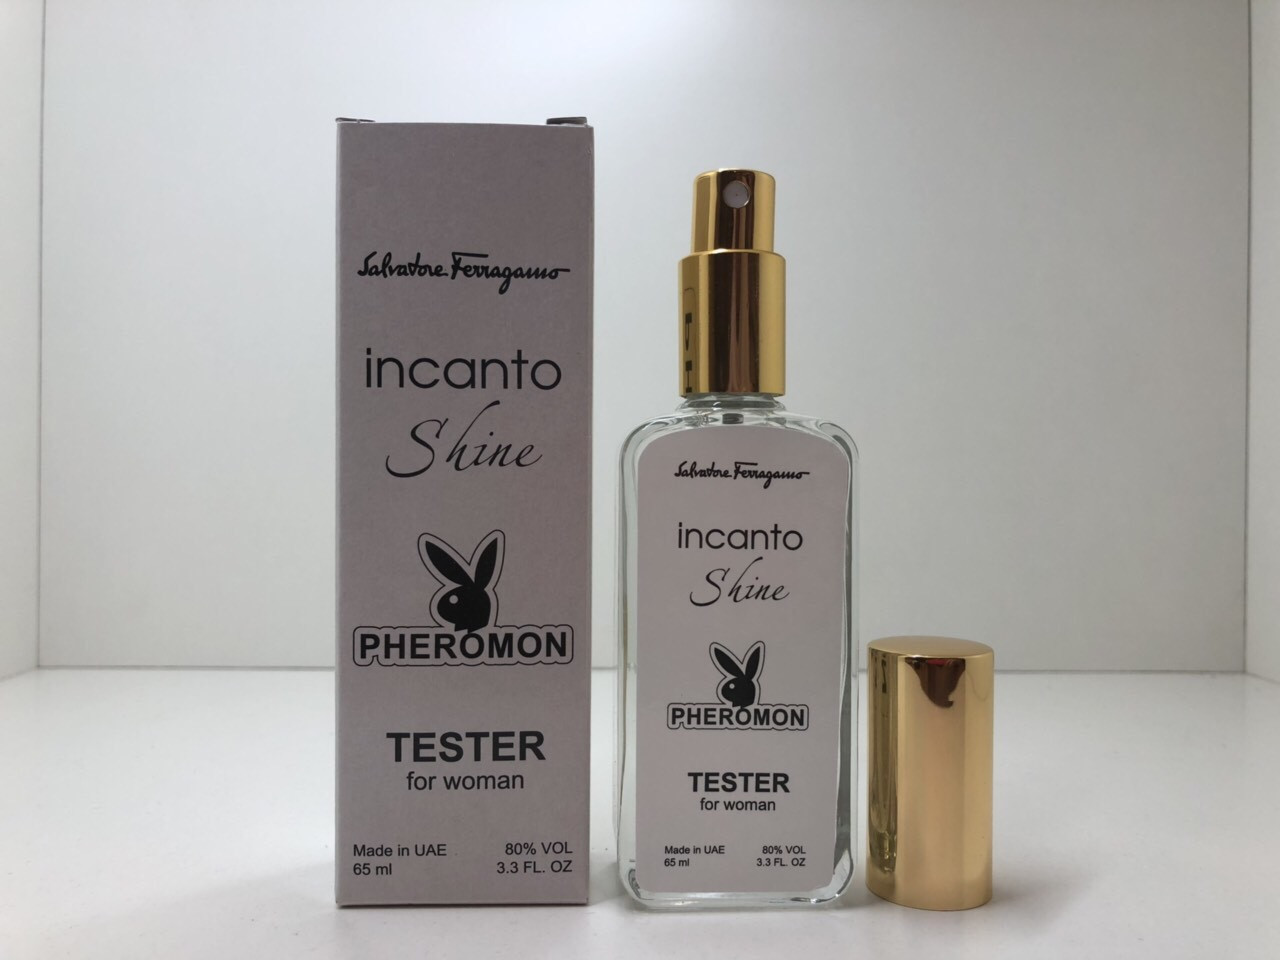 

Женский парфюм Incanto Shine Salvatore Ferragamo тестер 65 ml с феромонами ОАЭ (реплика)